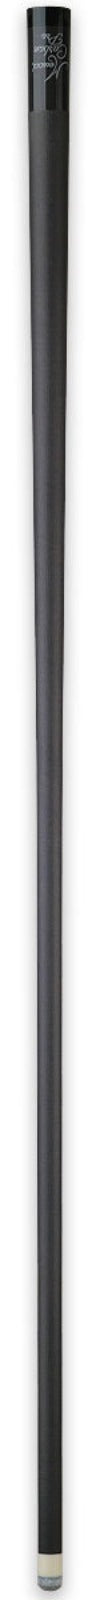 Meucci Meucci Carbon Fiber Pro Shaft - 12.60mm 